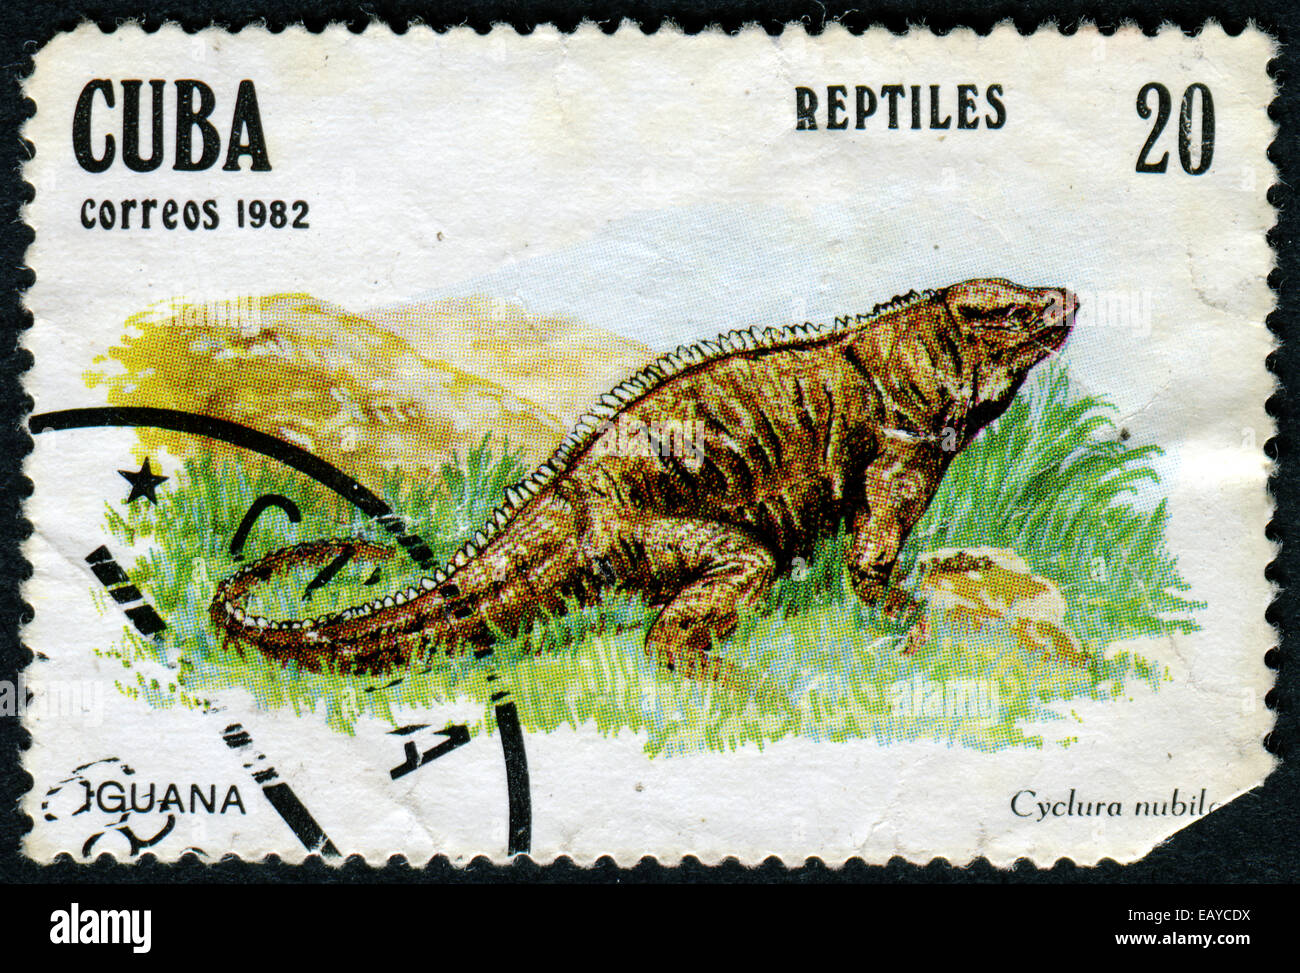 CUBA: circa 1982: un sello impreso en Cuba - Iguana Cyclura nubila, serie de reptiles, circa 1982 Foto de stock